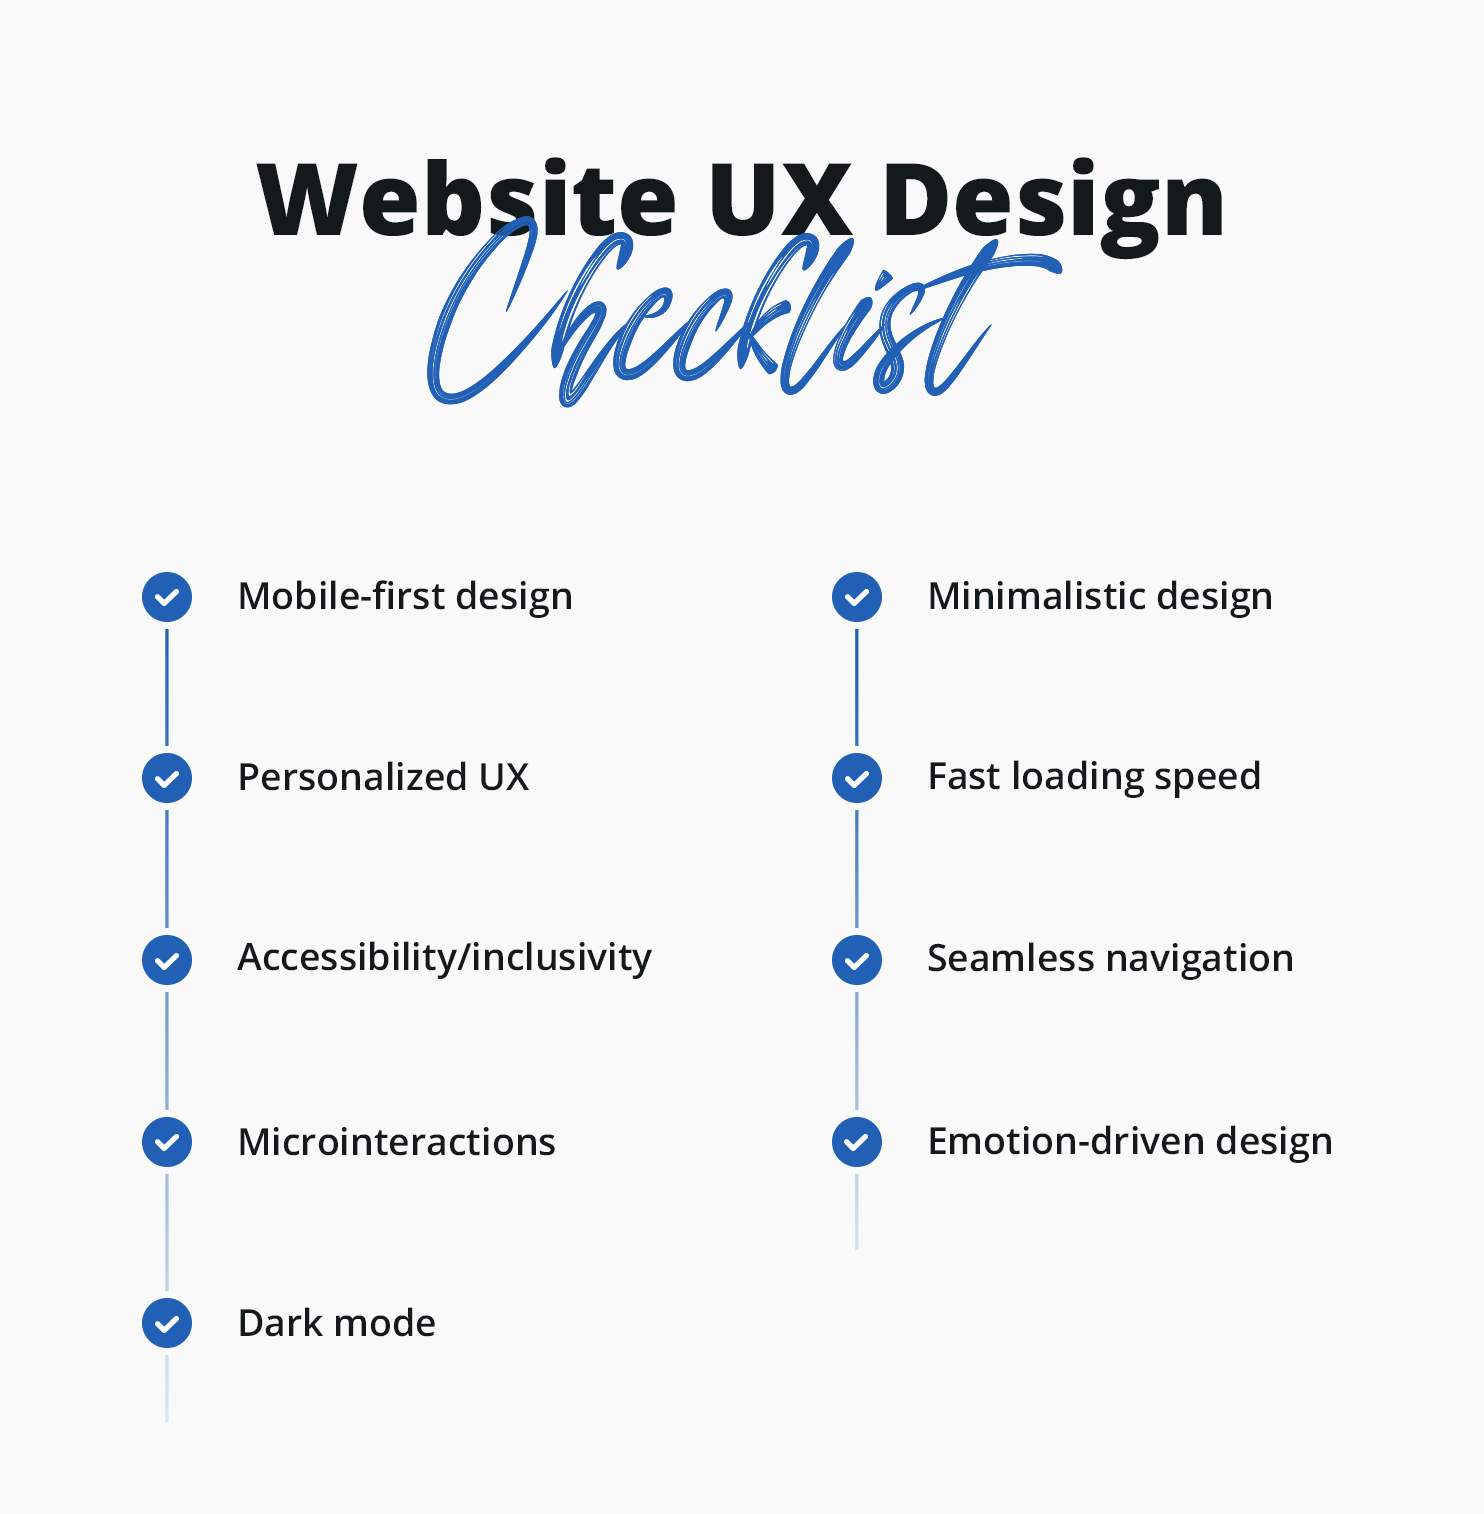 Website UX Design Checklist